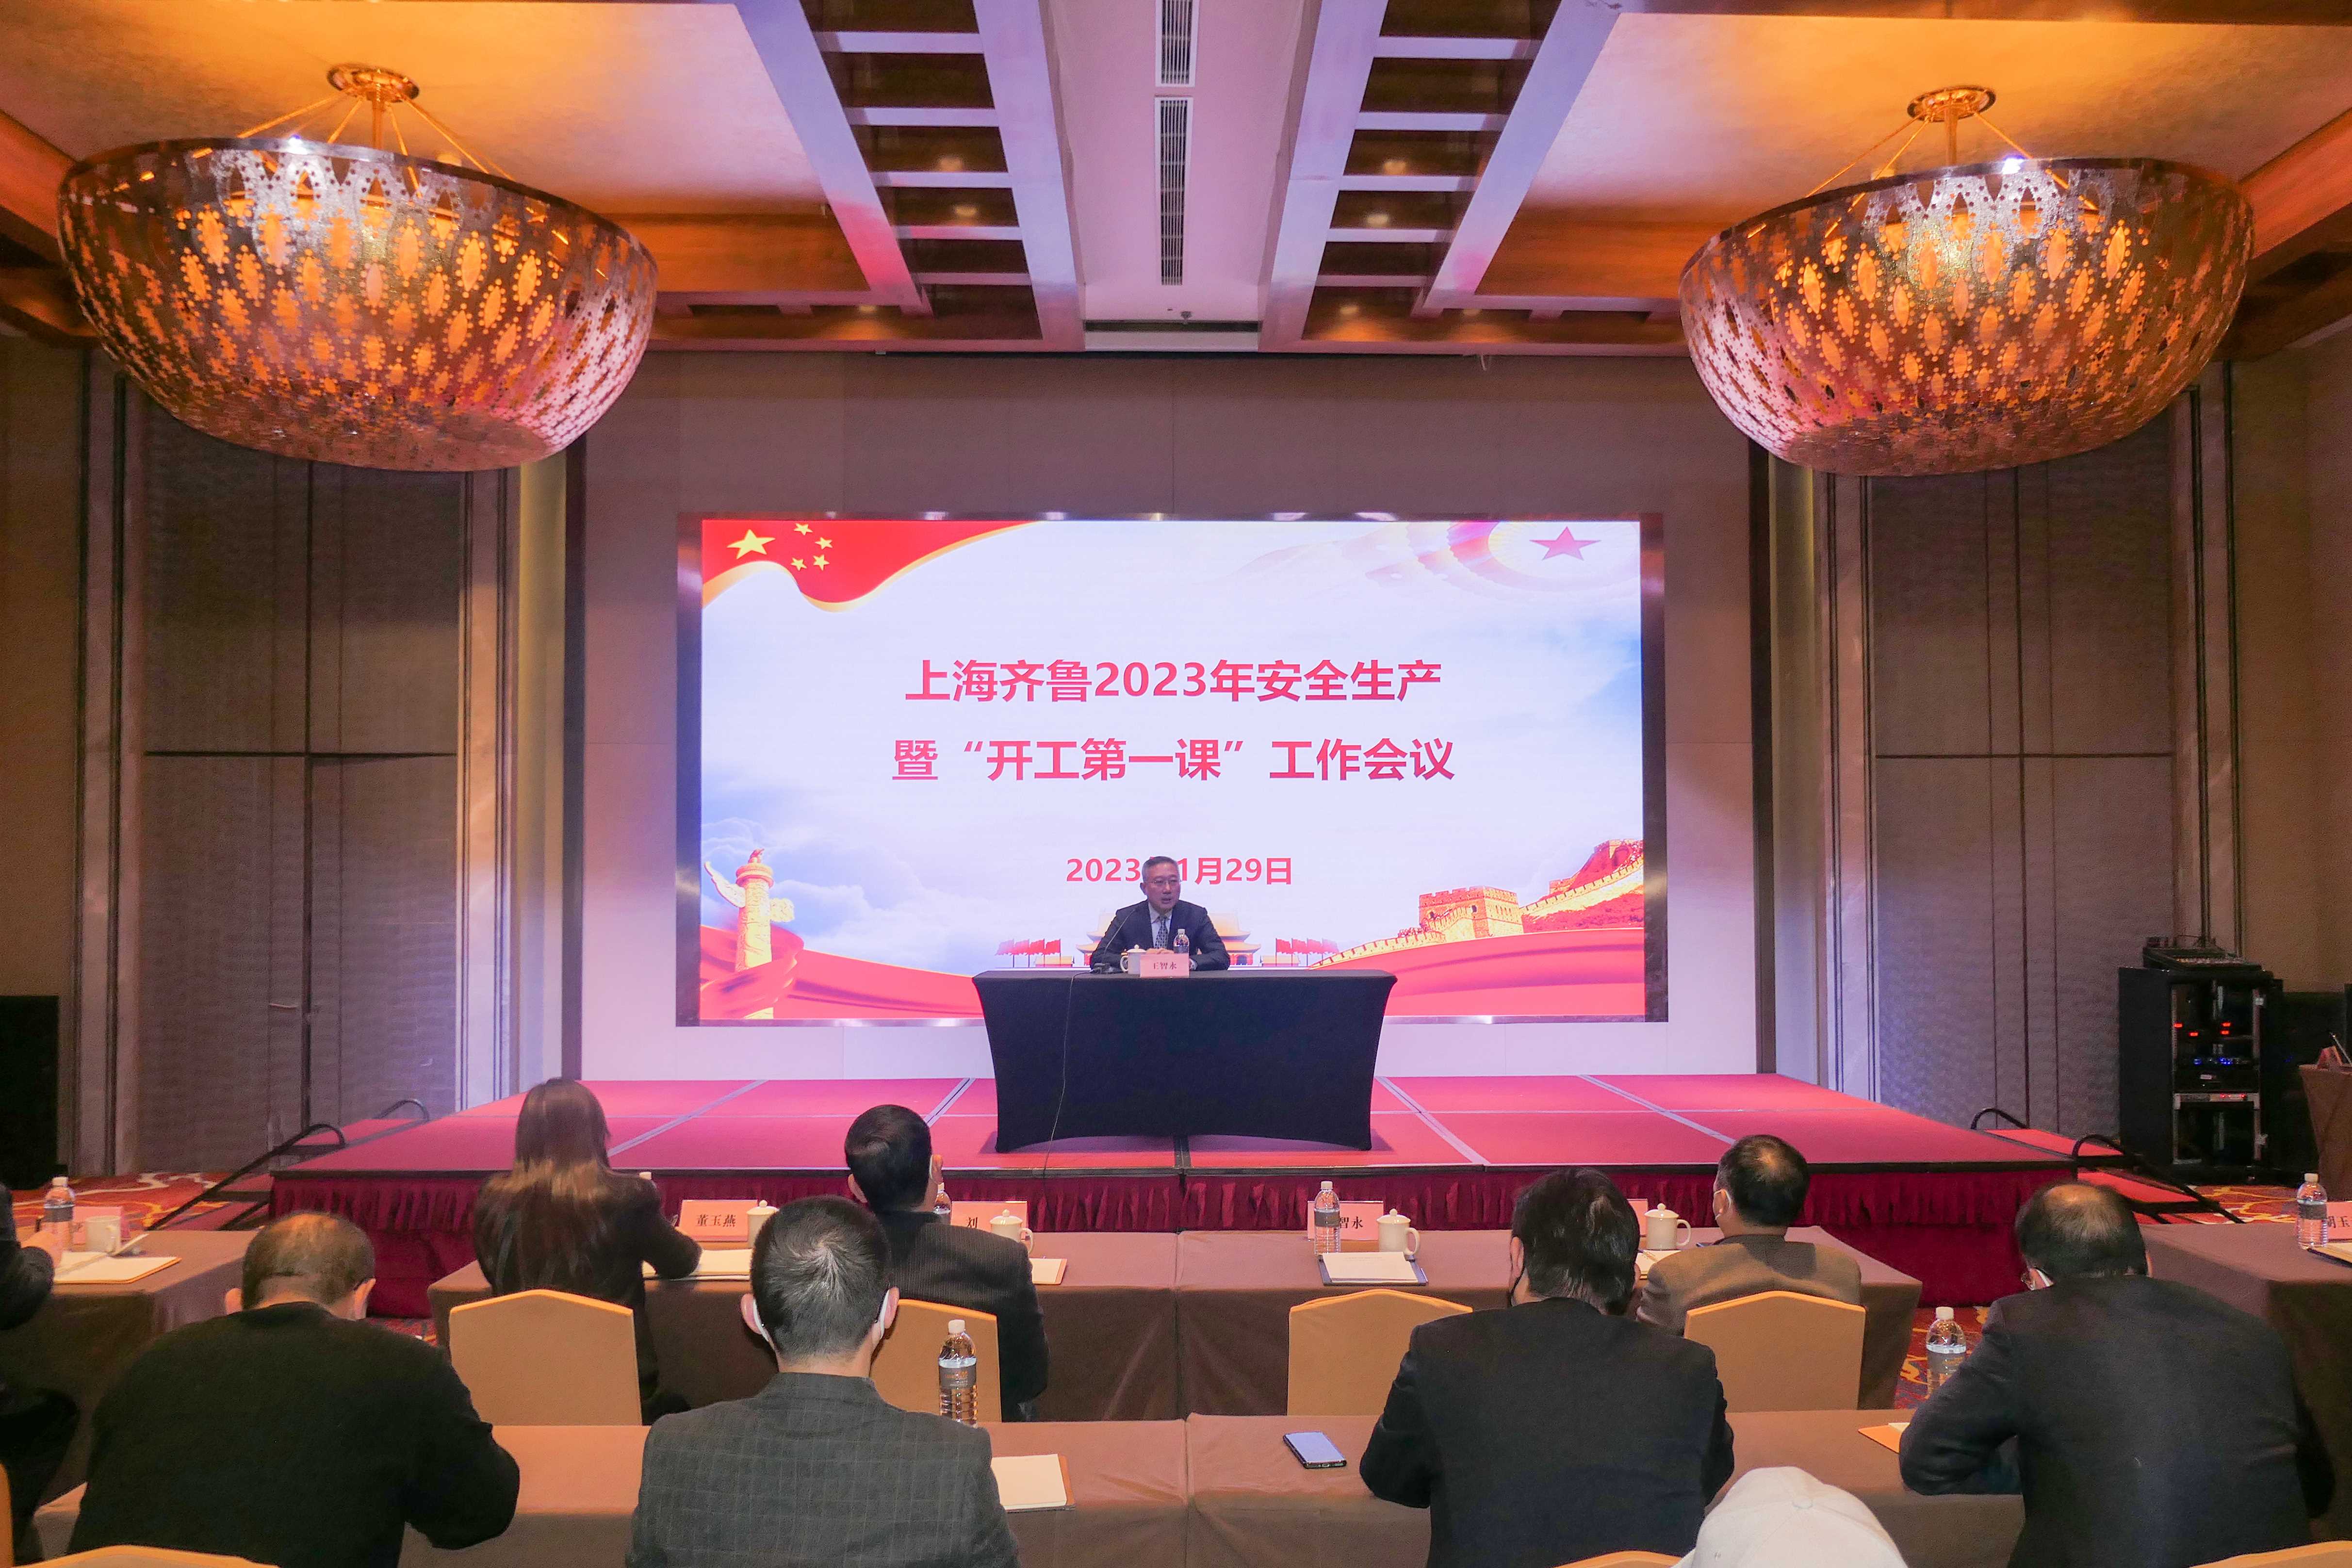 上海齊魯召開2023年度安全生產工作會議暨“開工第一課”